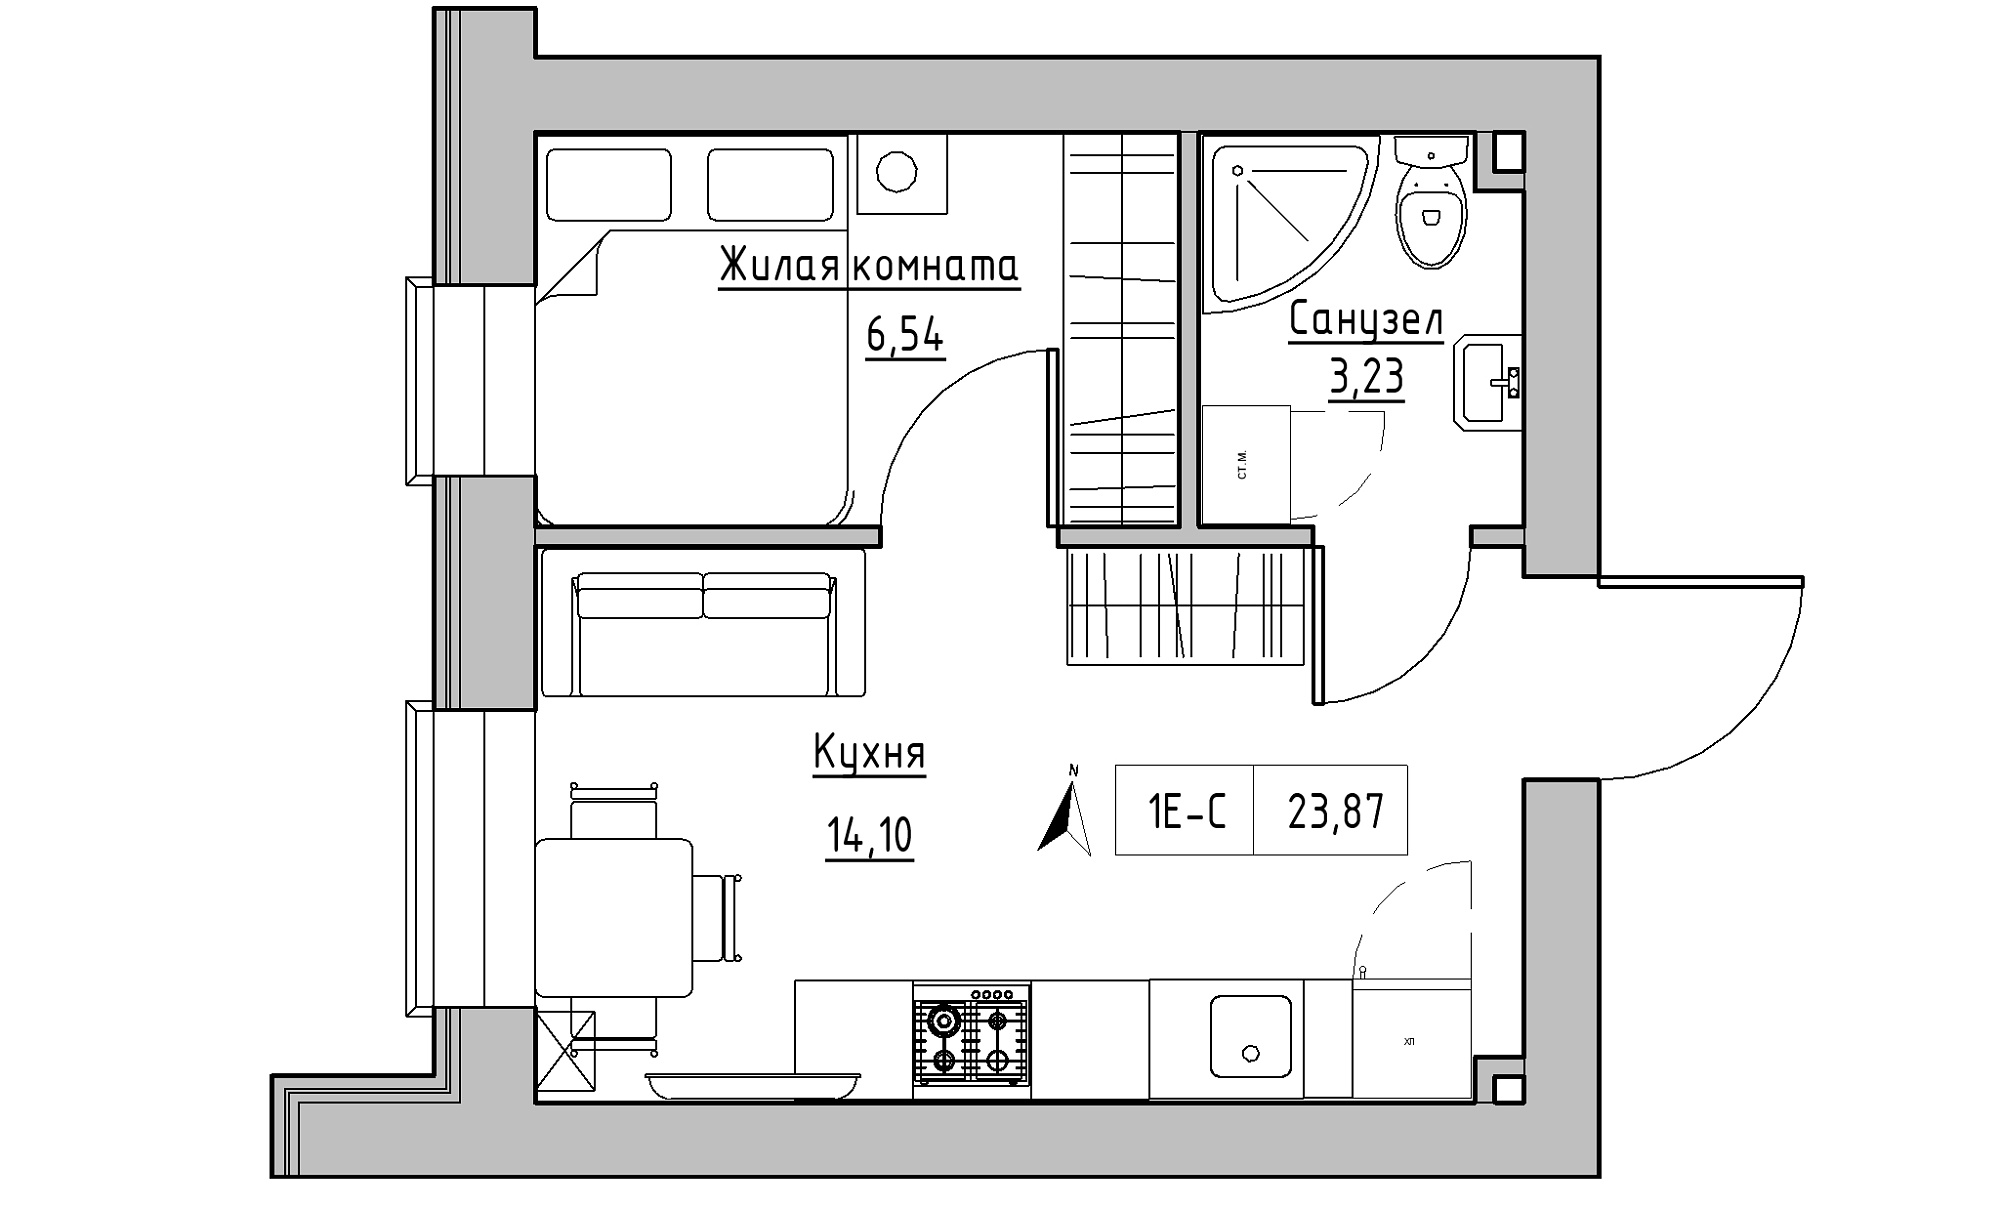 Планировка 1-к квартира площей 23.87м2, KS-016-04/0012.